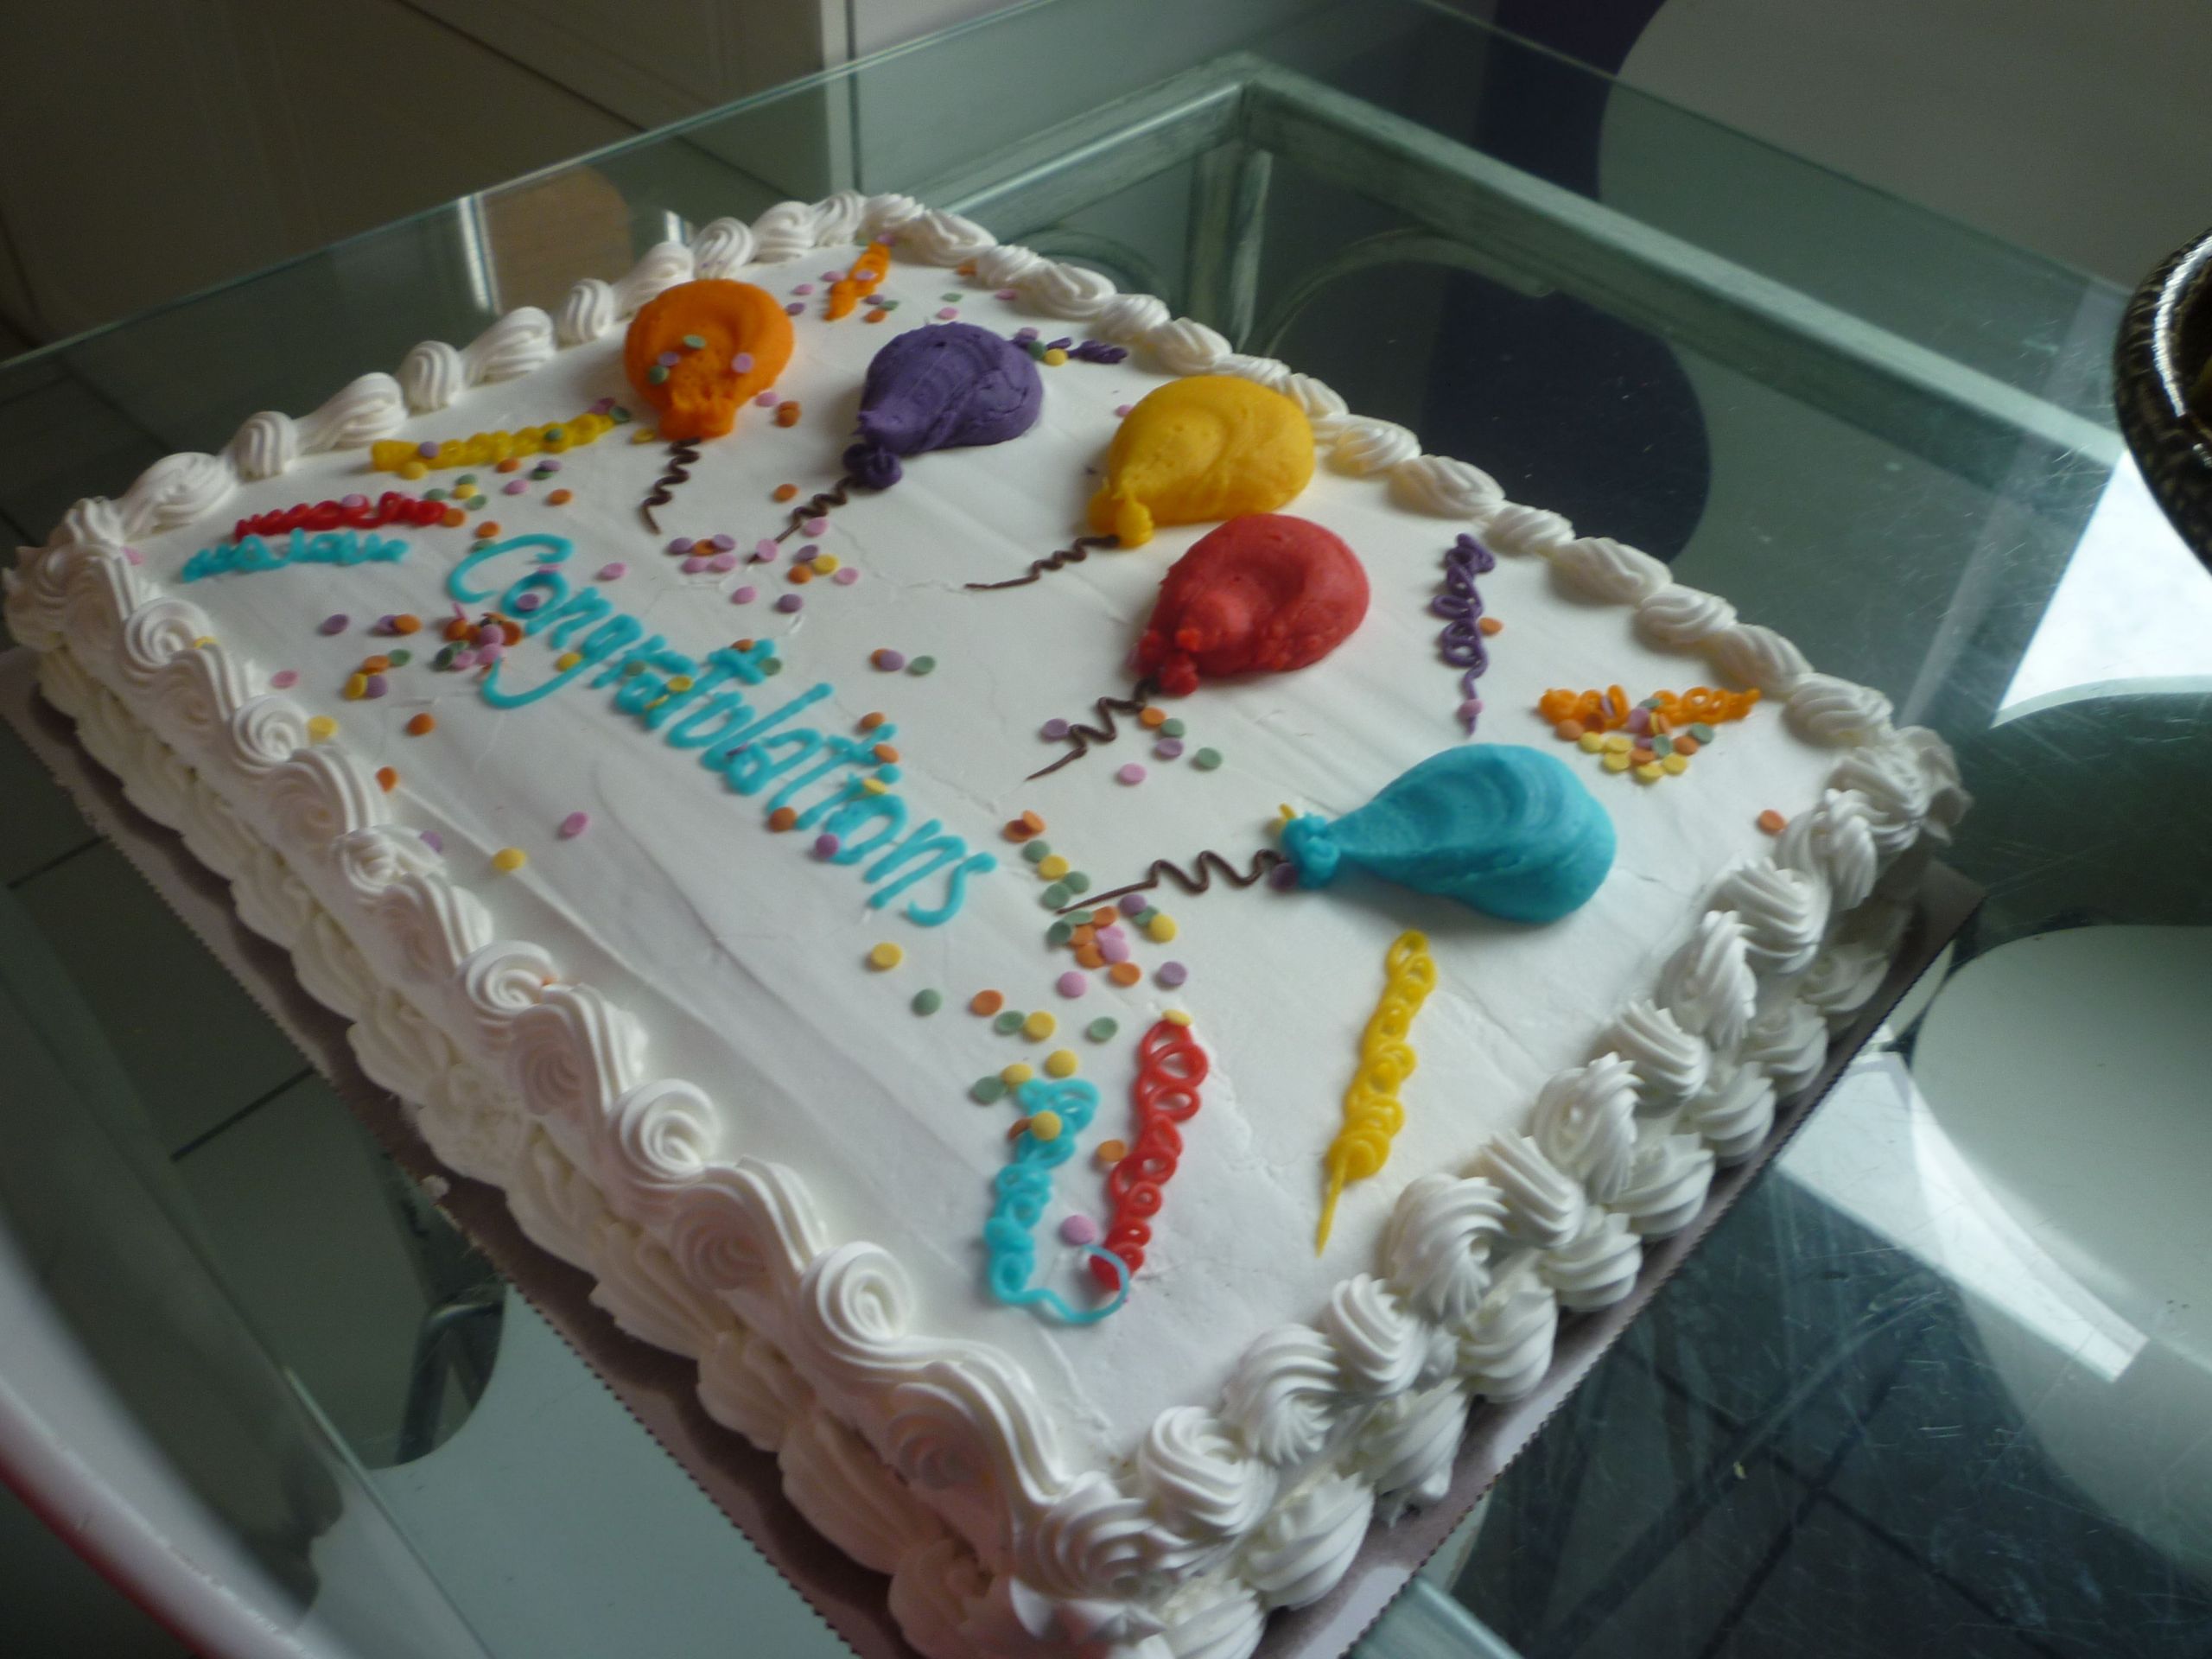 Costco Birthday Cake Designs
 Costco Cake